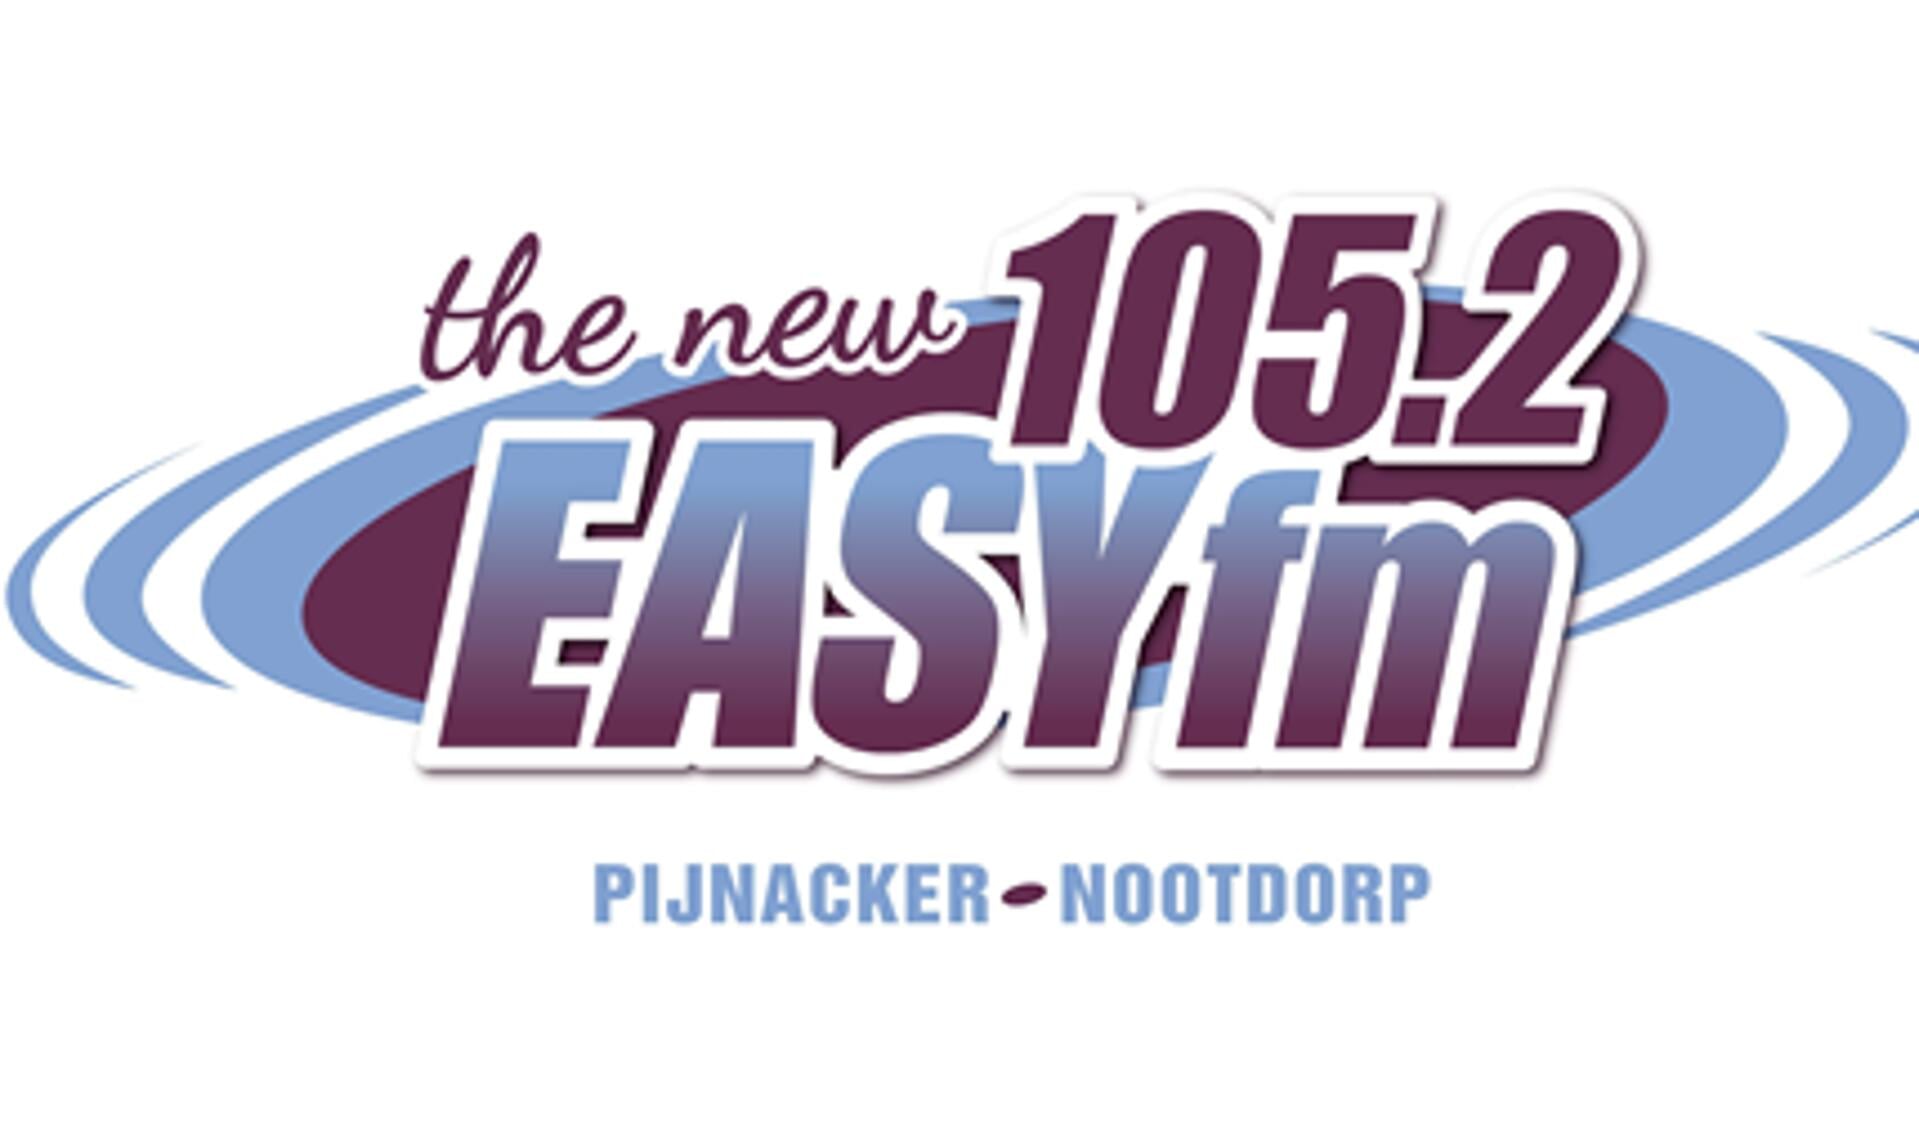 Het logo van de nieuwe zender.